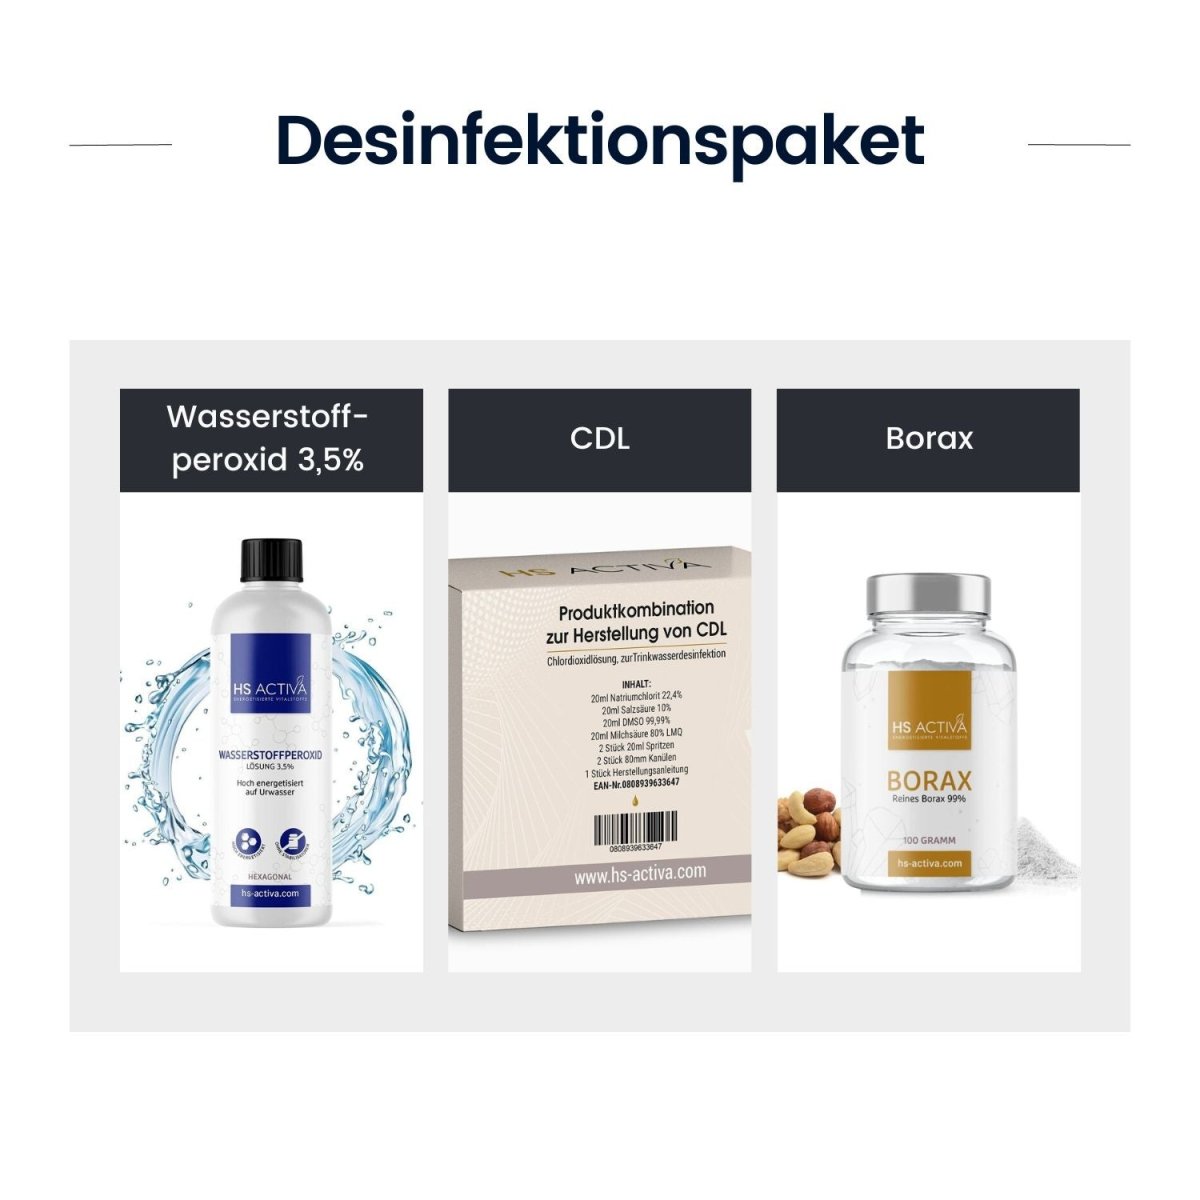 Desinfektionspaket (Wasserstoffperoxid 3,5% + CDL + Borax) - HS Activa